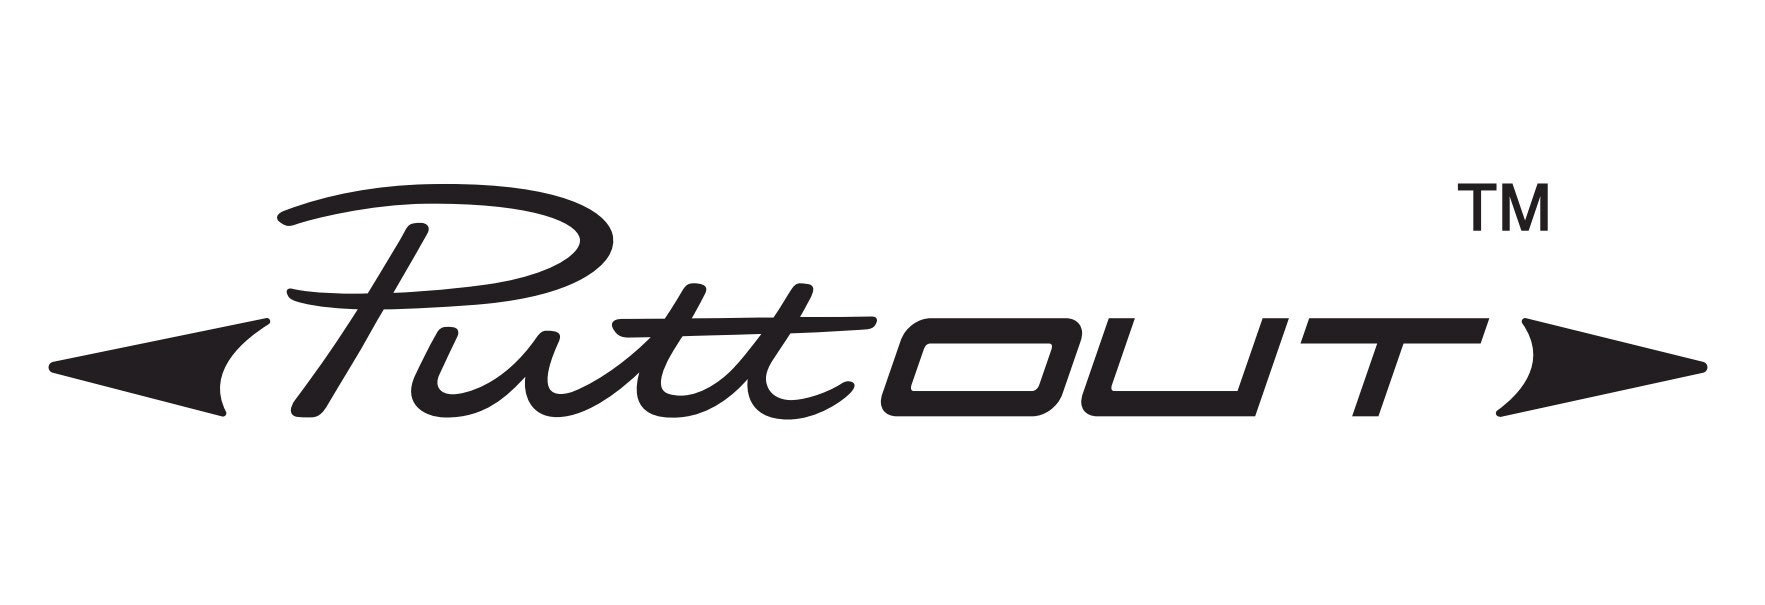 PuttOut